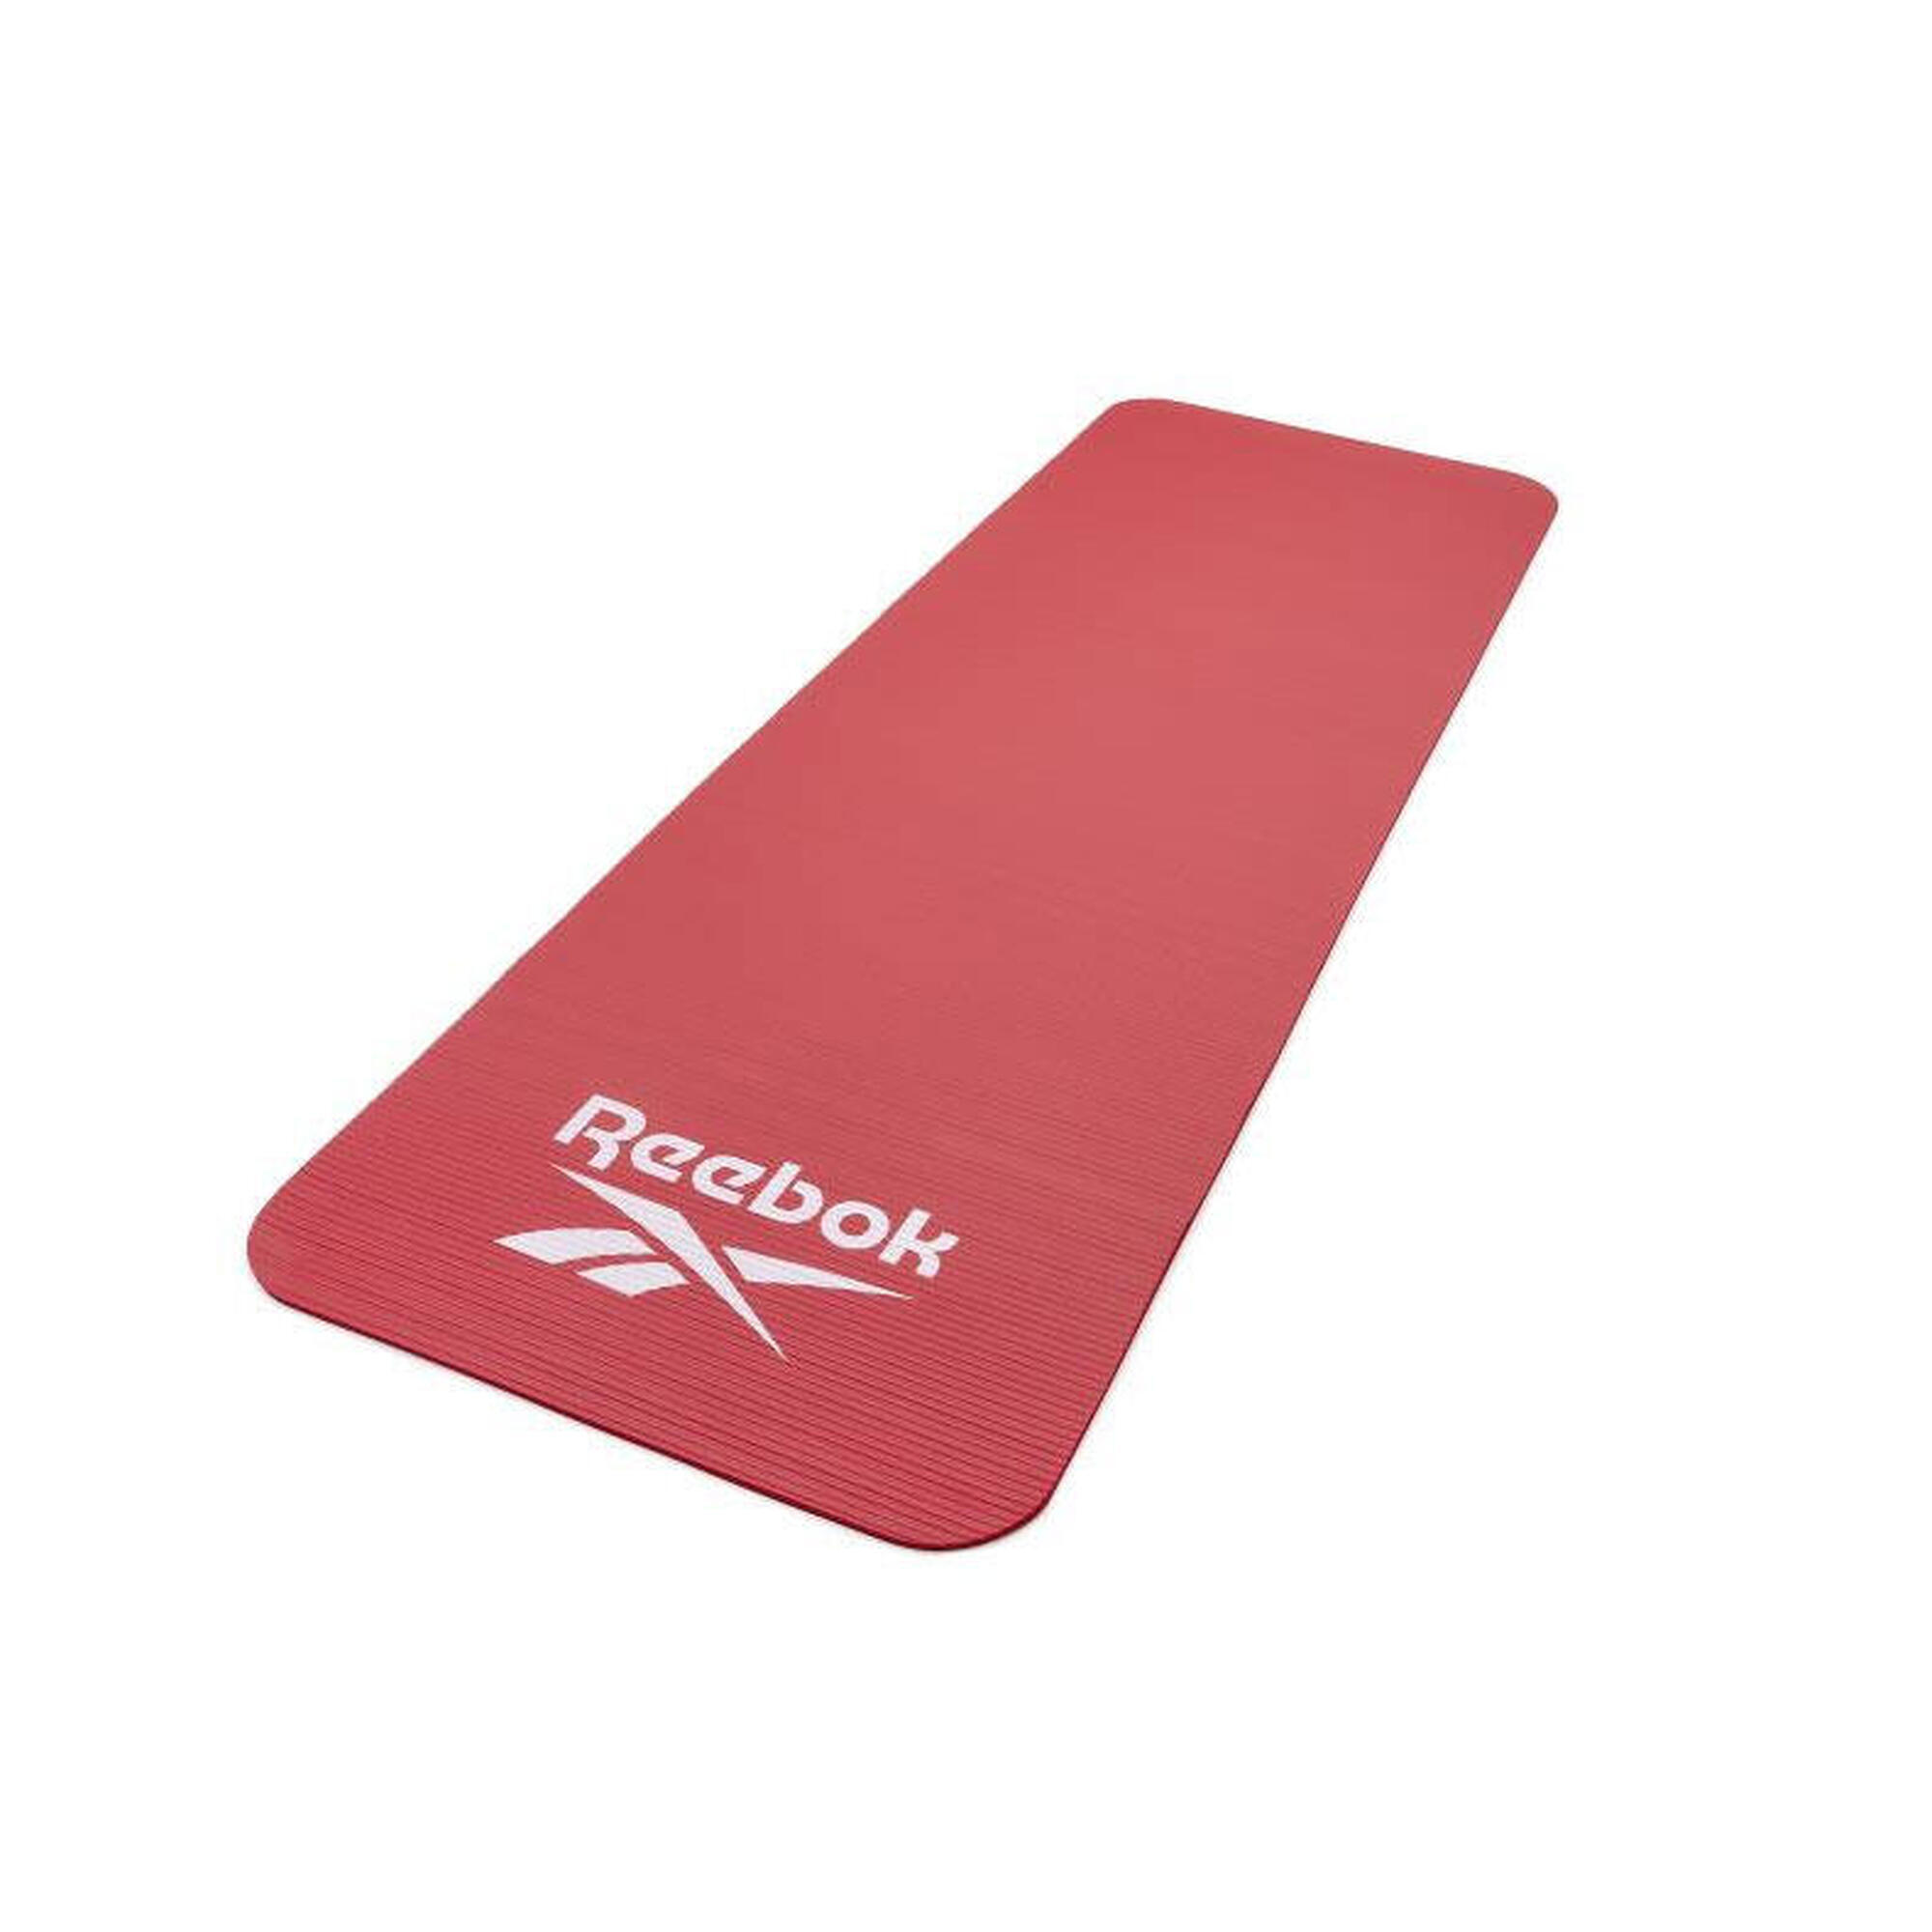 Tappetino da allenamento Reebok - 7 mm Colore: Rosso